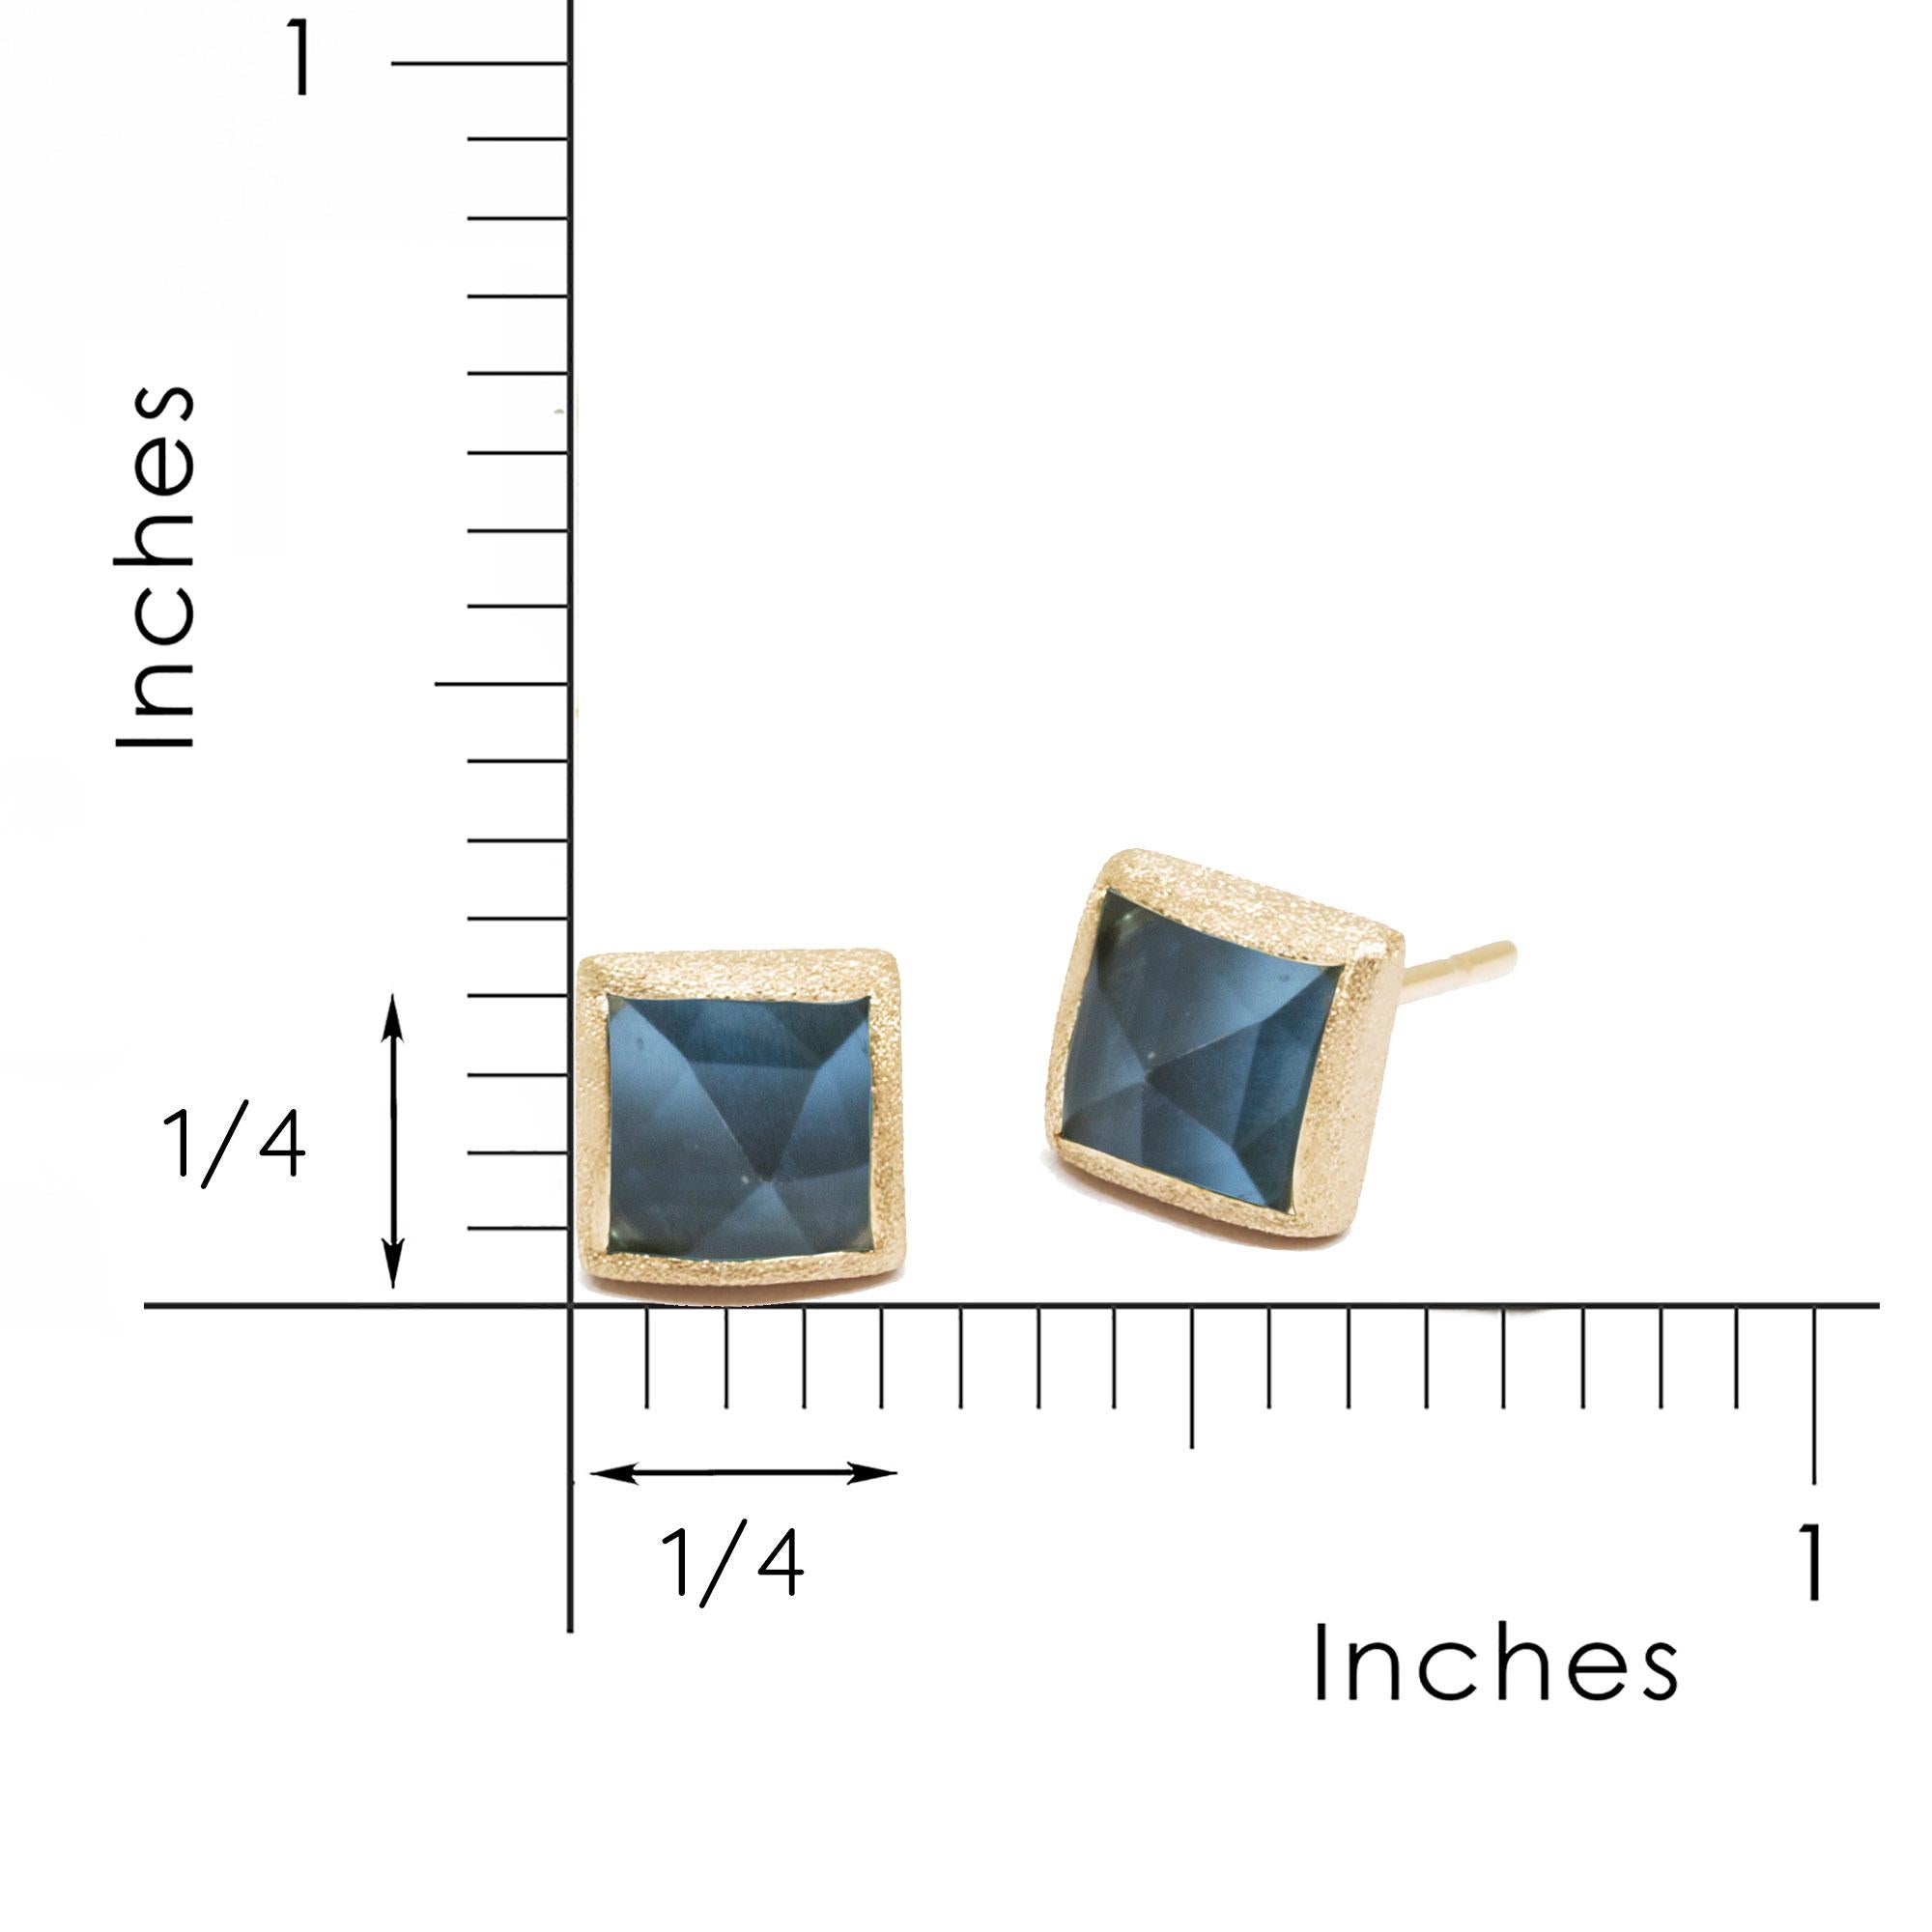 Les boucles d'oreilles de Nina Nguyen Design/One, dont le brevet est en cours d'homologation, comportent un élément au dos du clou ou de la breloque qui permet de transformer ces pièces en modèles multi-usages, empilables et convertibles. Il peut